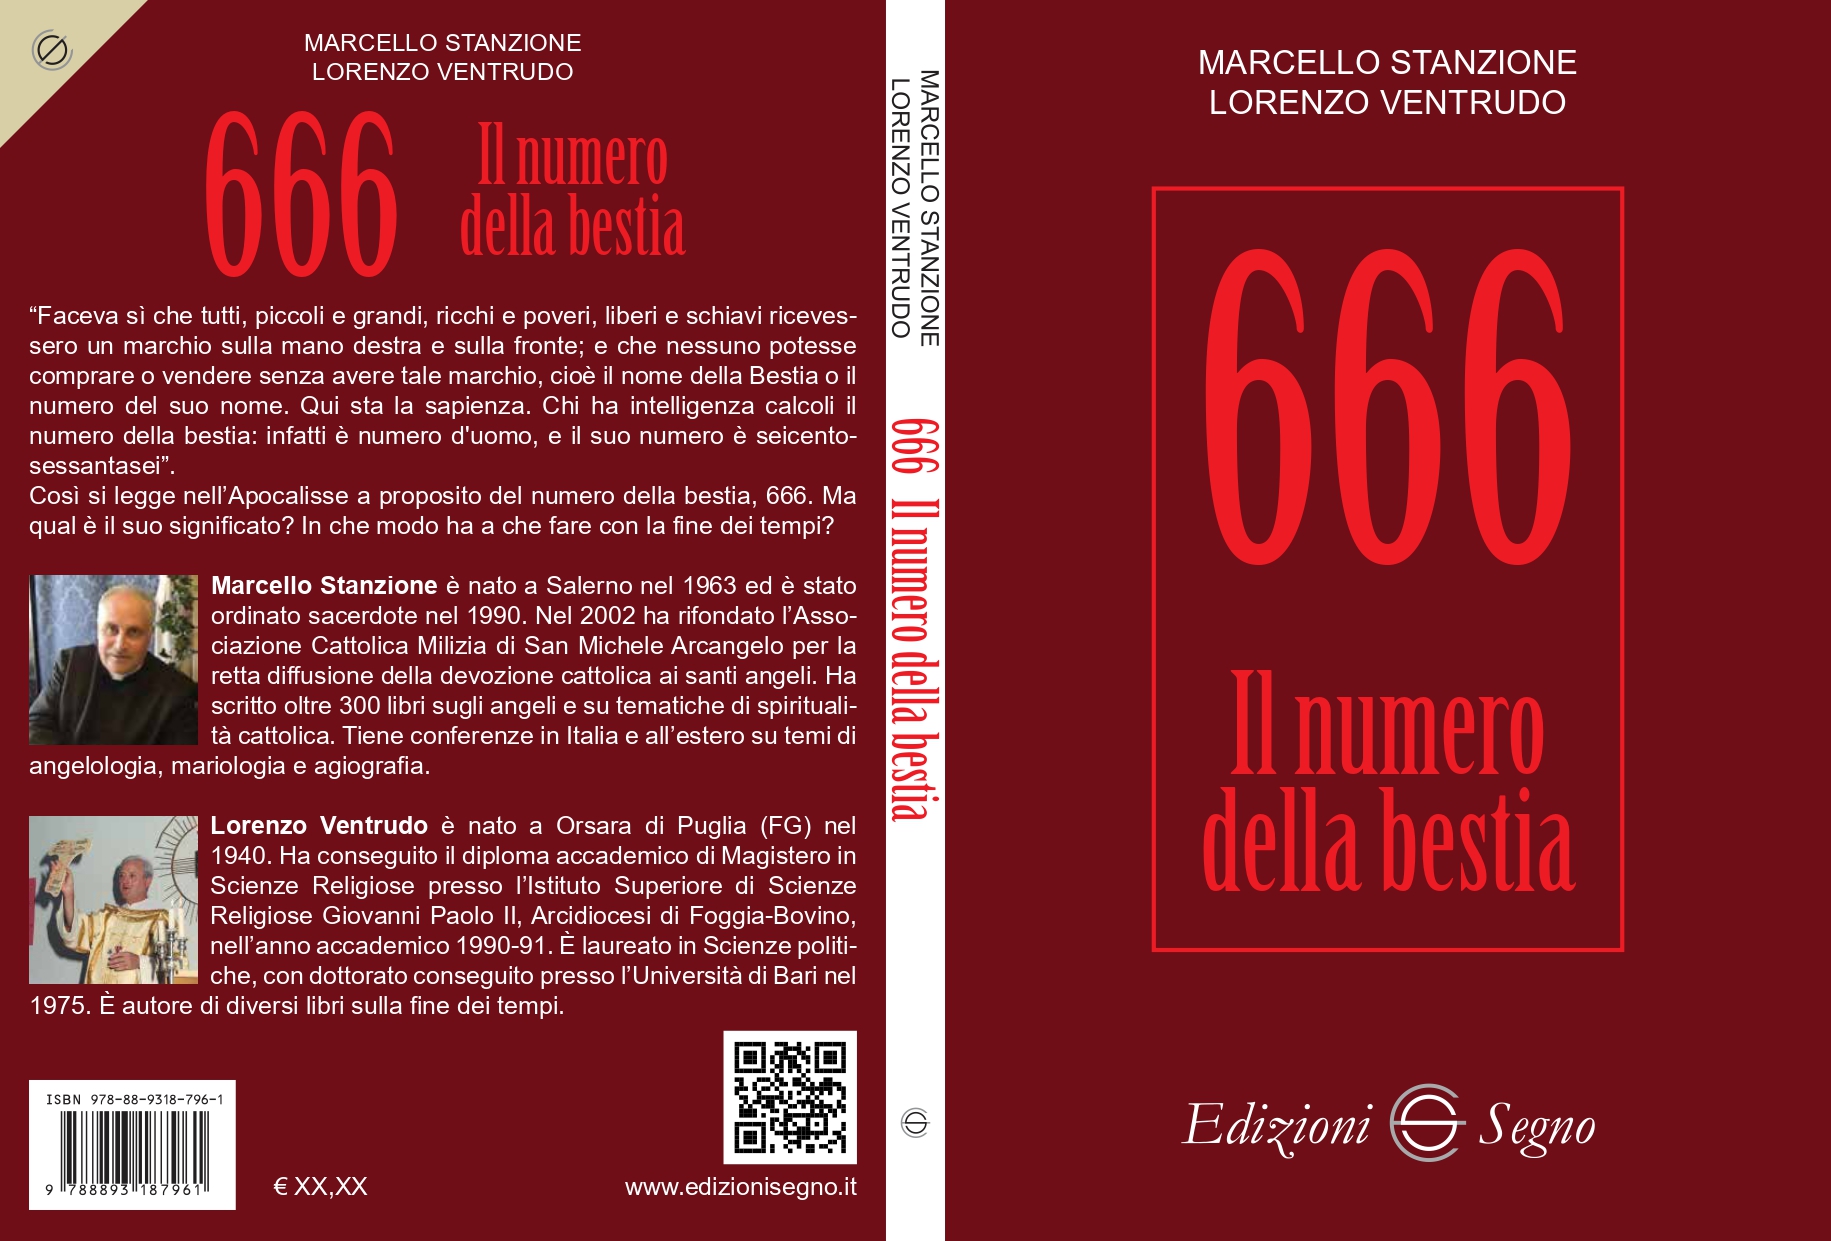 Varie interpretazioni sul numero 666 nel libro di don Marcello Stanzione  